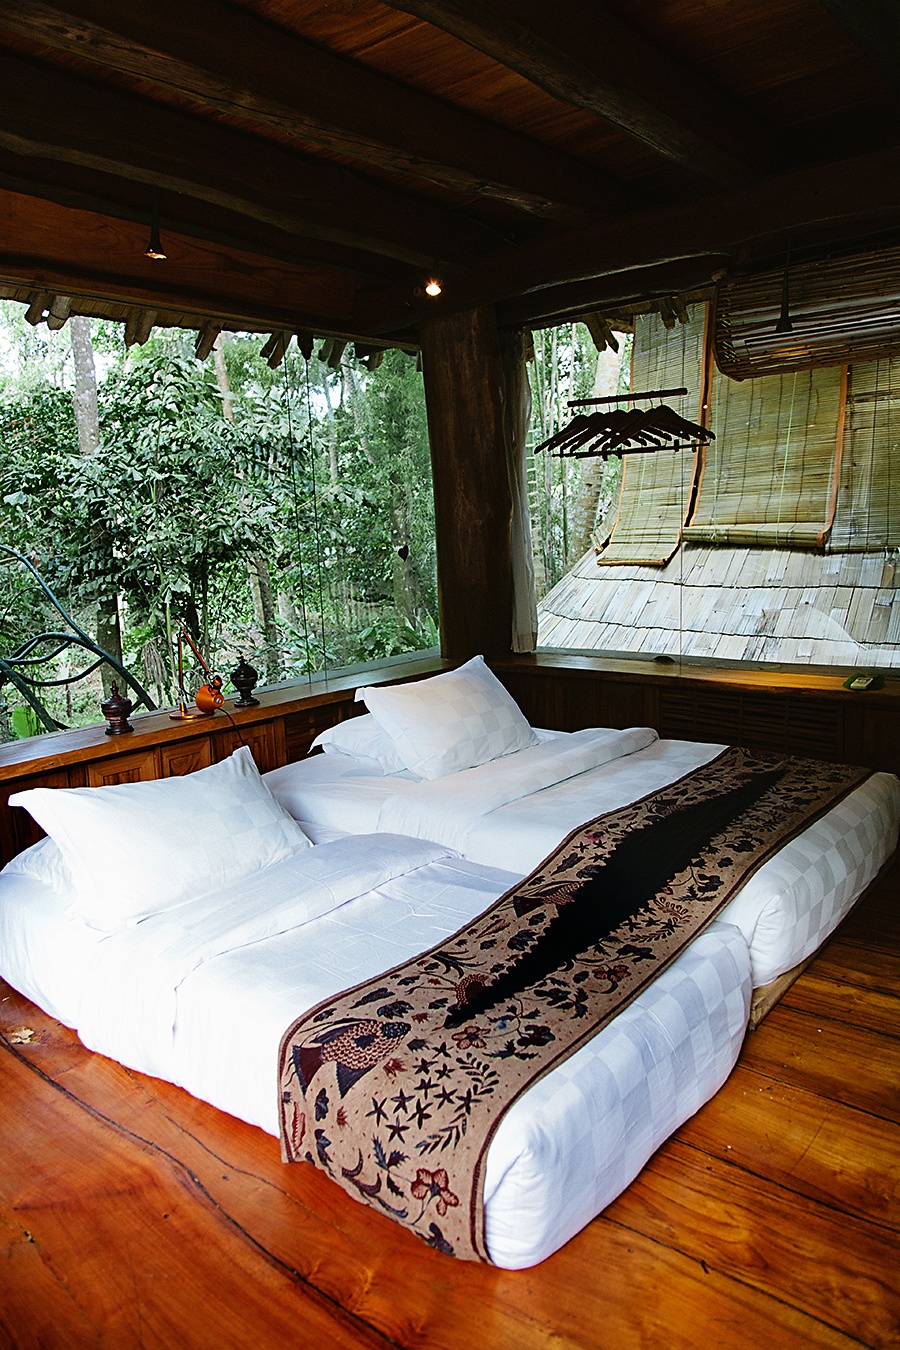 Эко-бутик-отель Bambu Indah: комфорт в гармонии с окружающей средой (Бали, Индонезия)